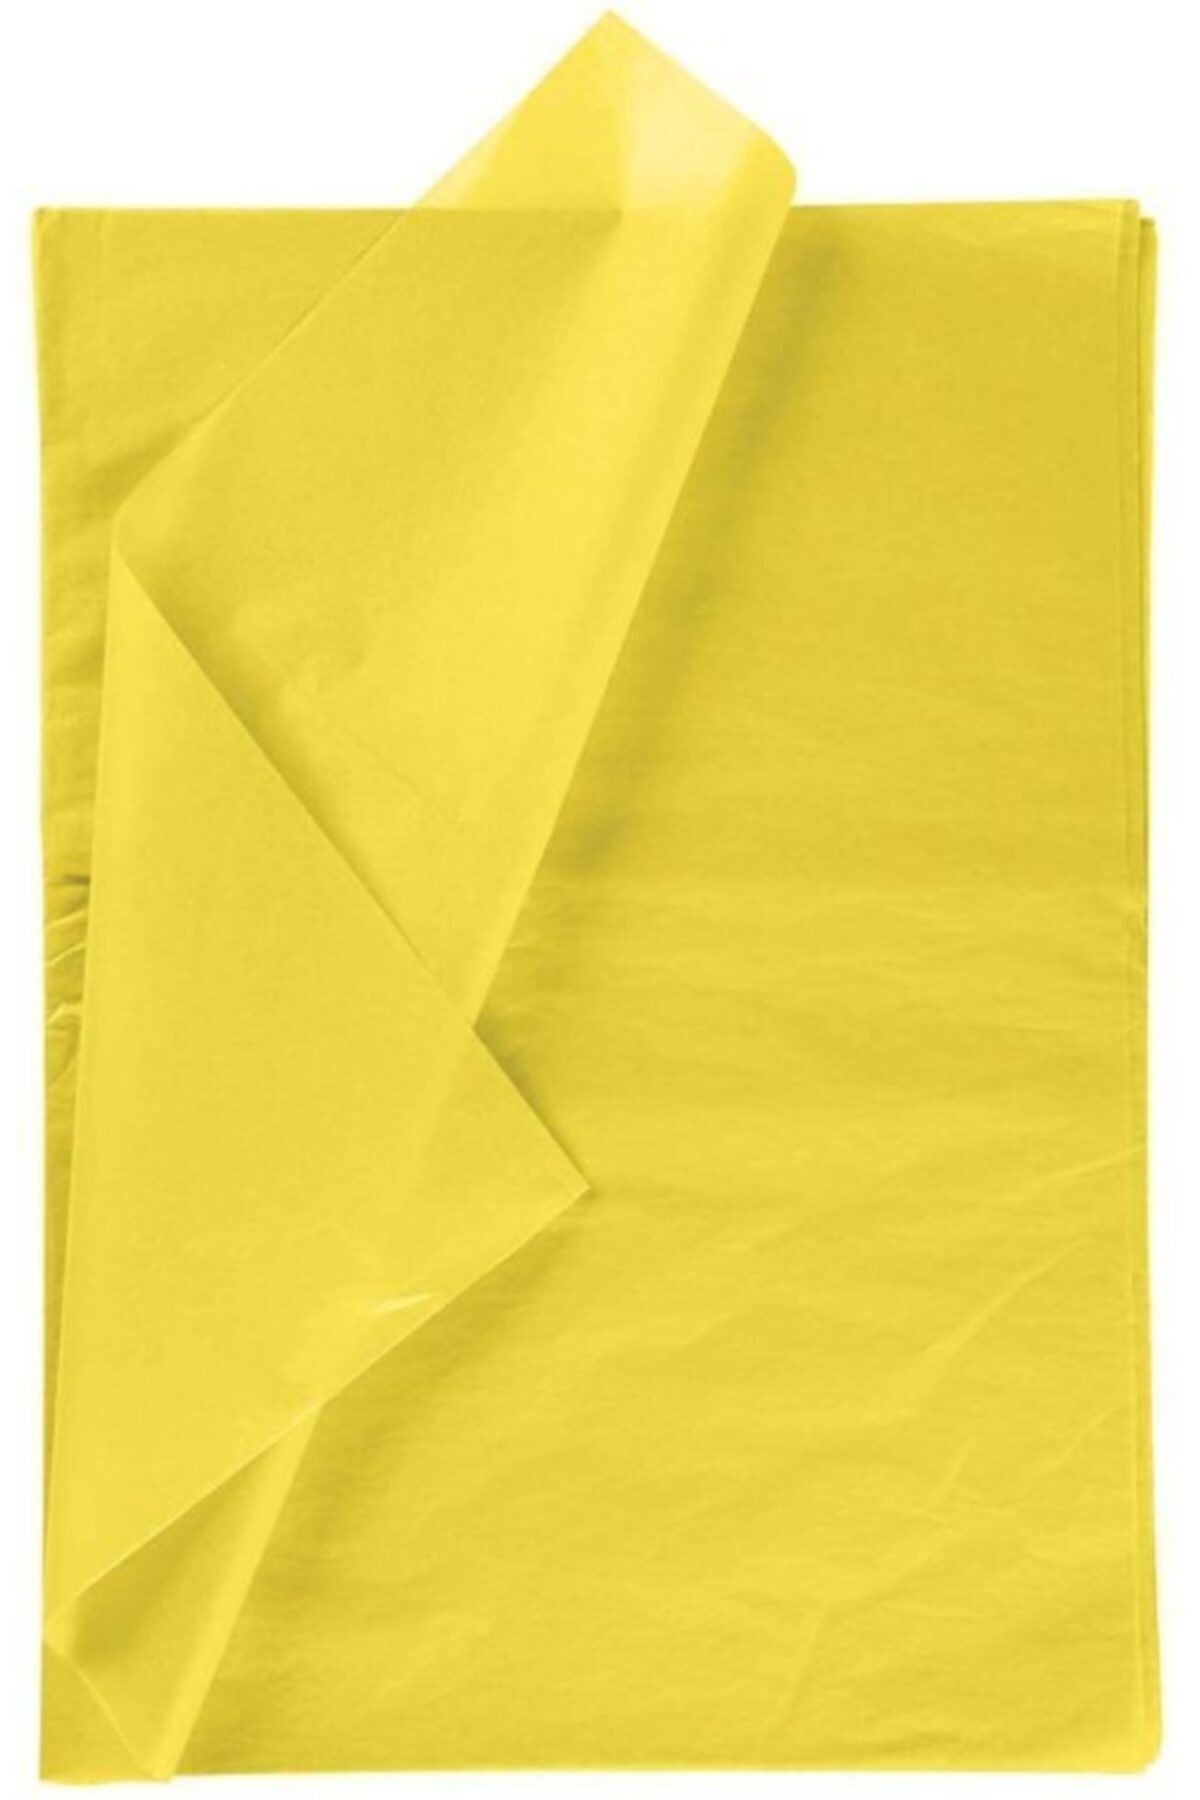 Sunalis Sarı Pelur Kağıt 35 X 50 Cm (10 Adet)